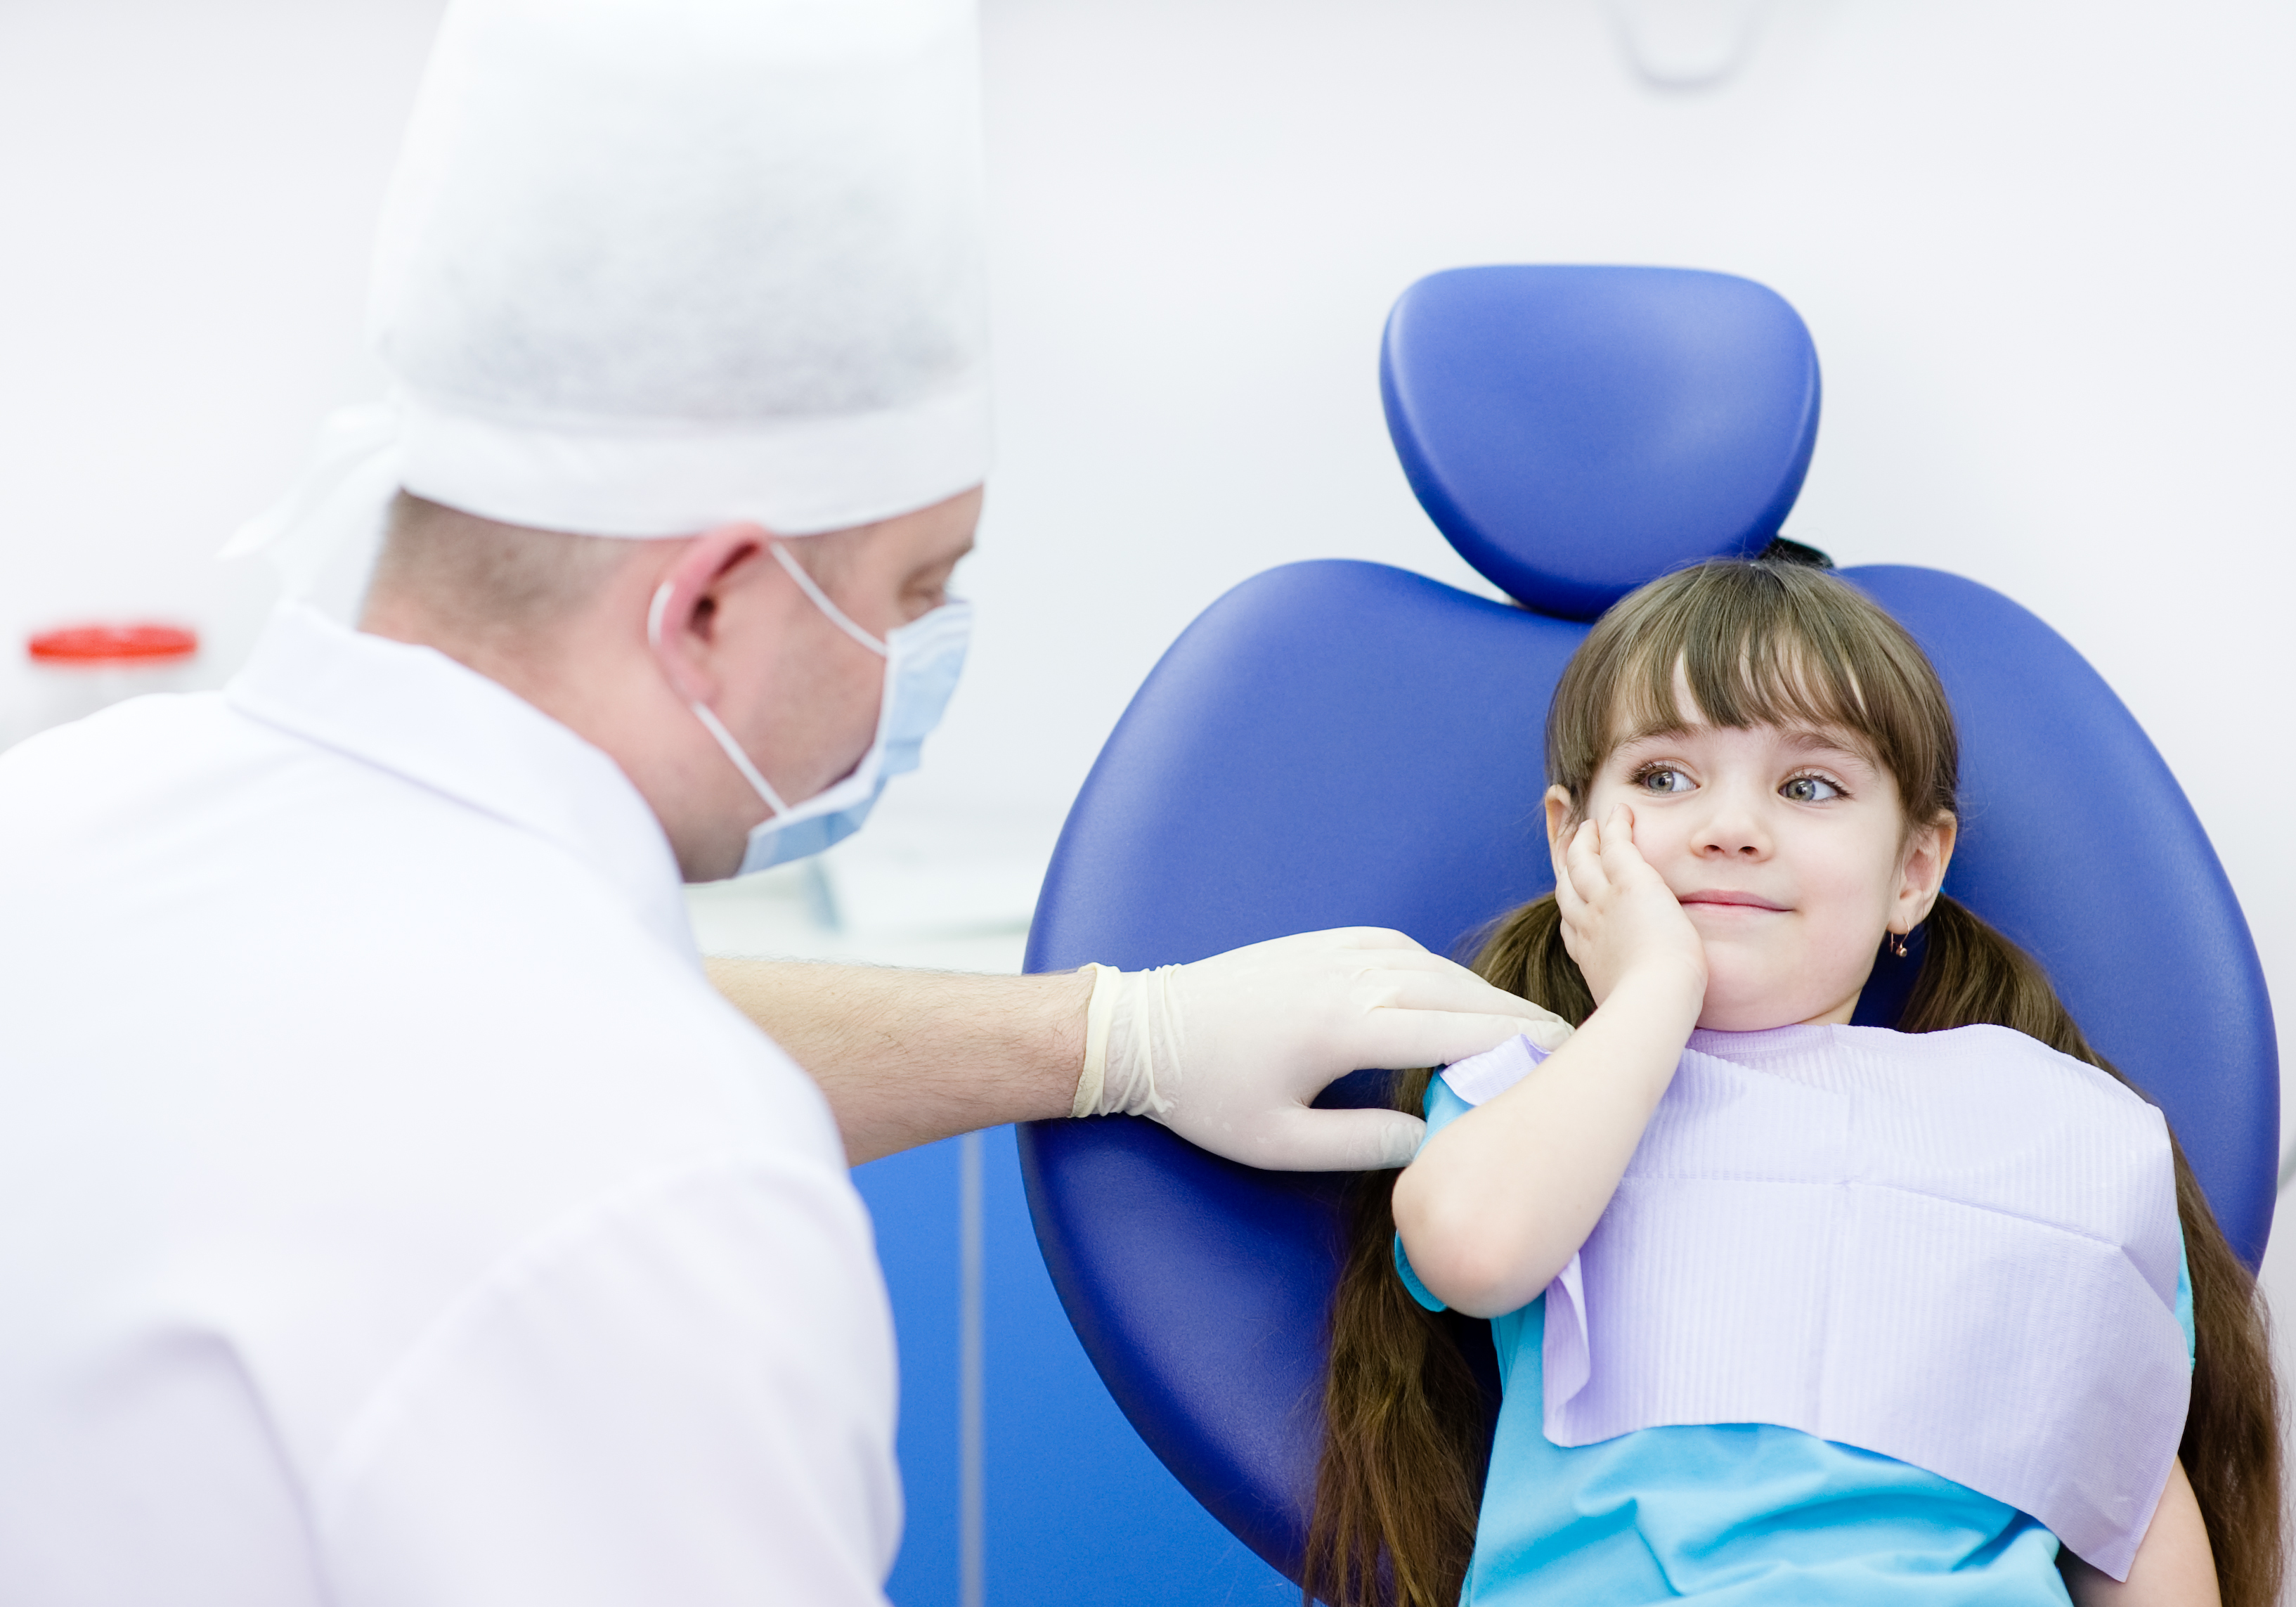 Лечение стоматологических заболеваний. Стоматология дети. Зубная боль у детей. Ребенок в кресле стоматолога.